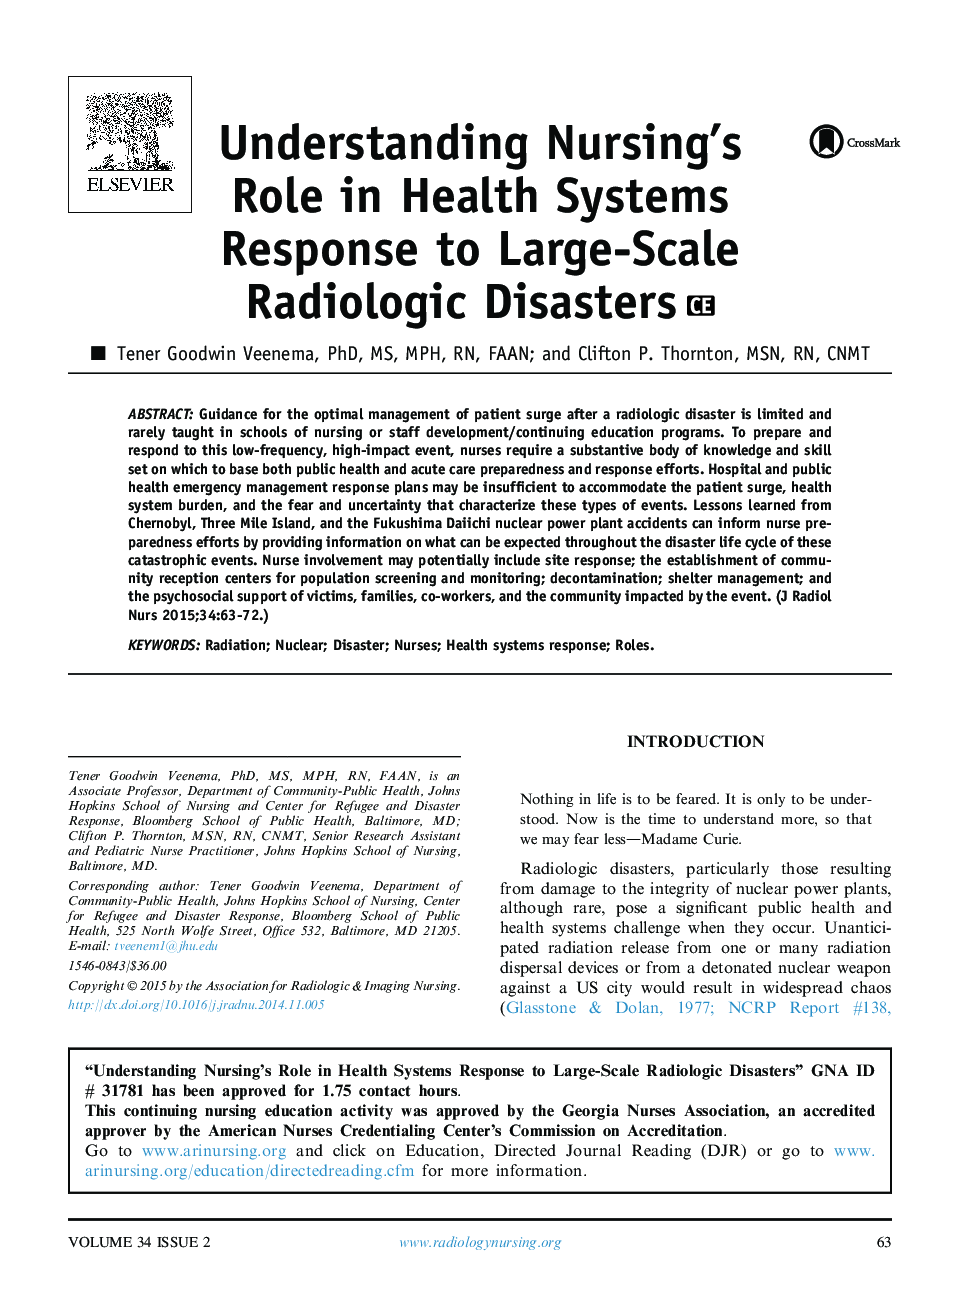 درک نقش پرستاری در پاسخگویی به سیستم های بهداشتی در برابر بلایای رادیولوژیکی بزرگ